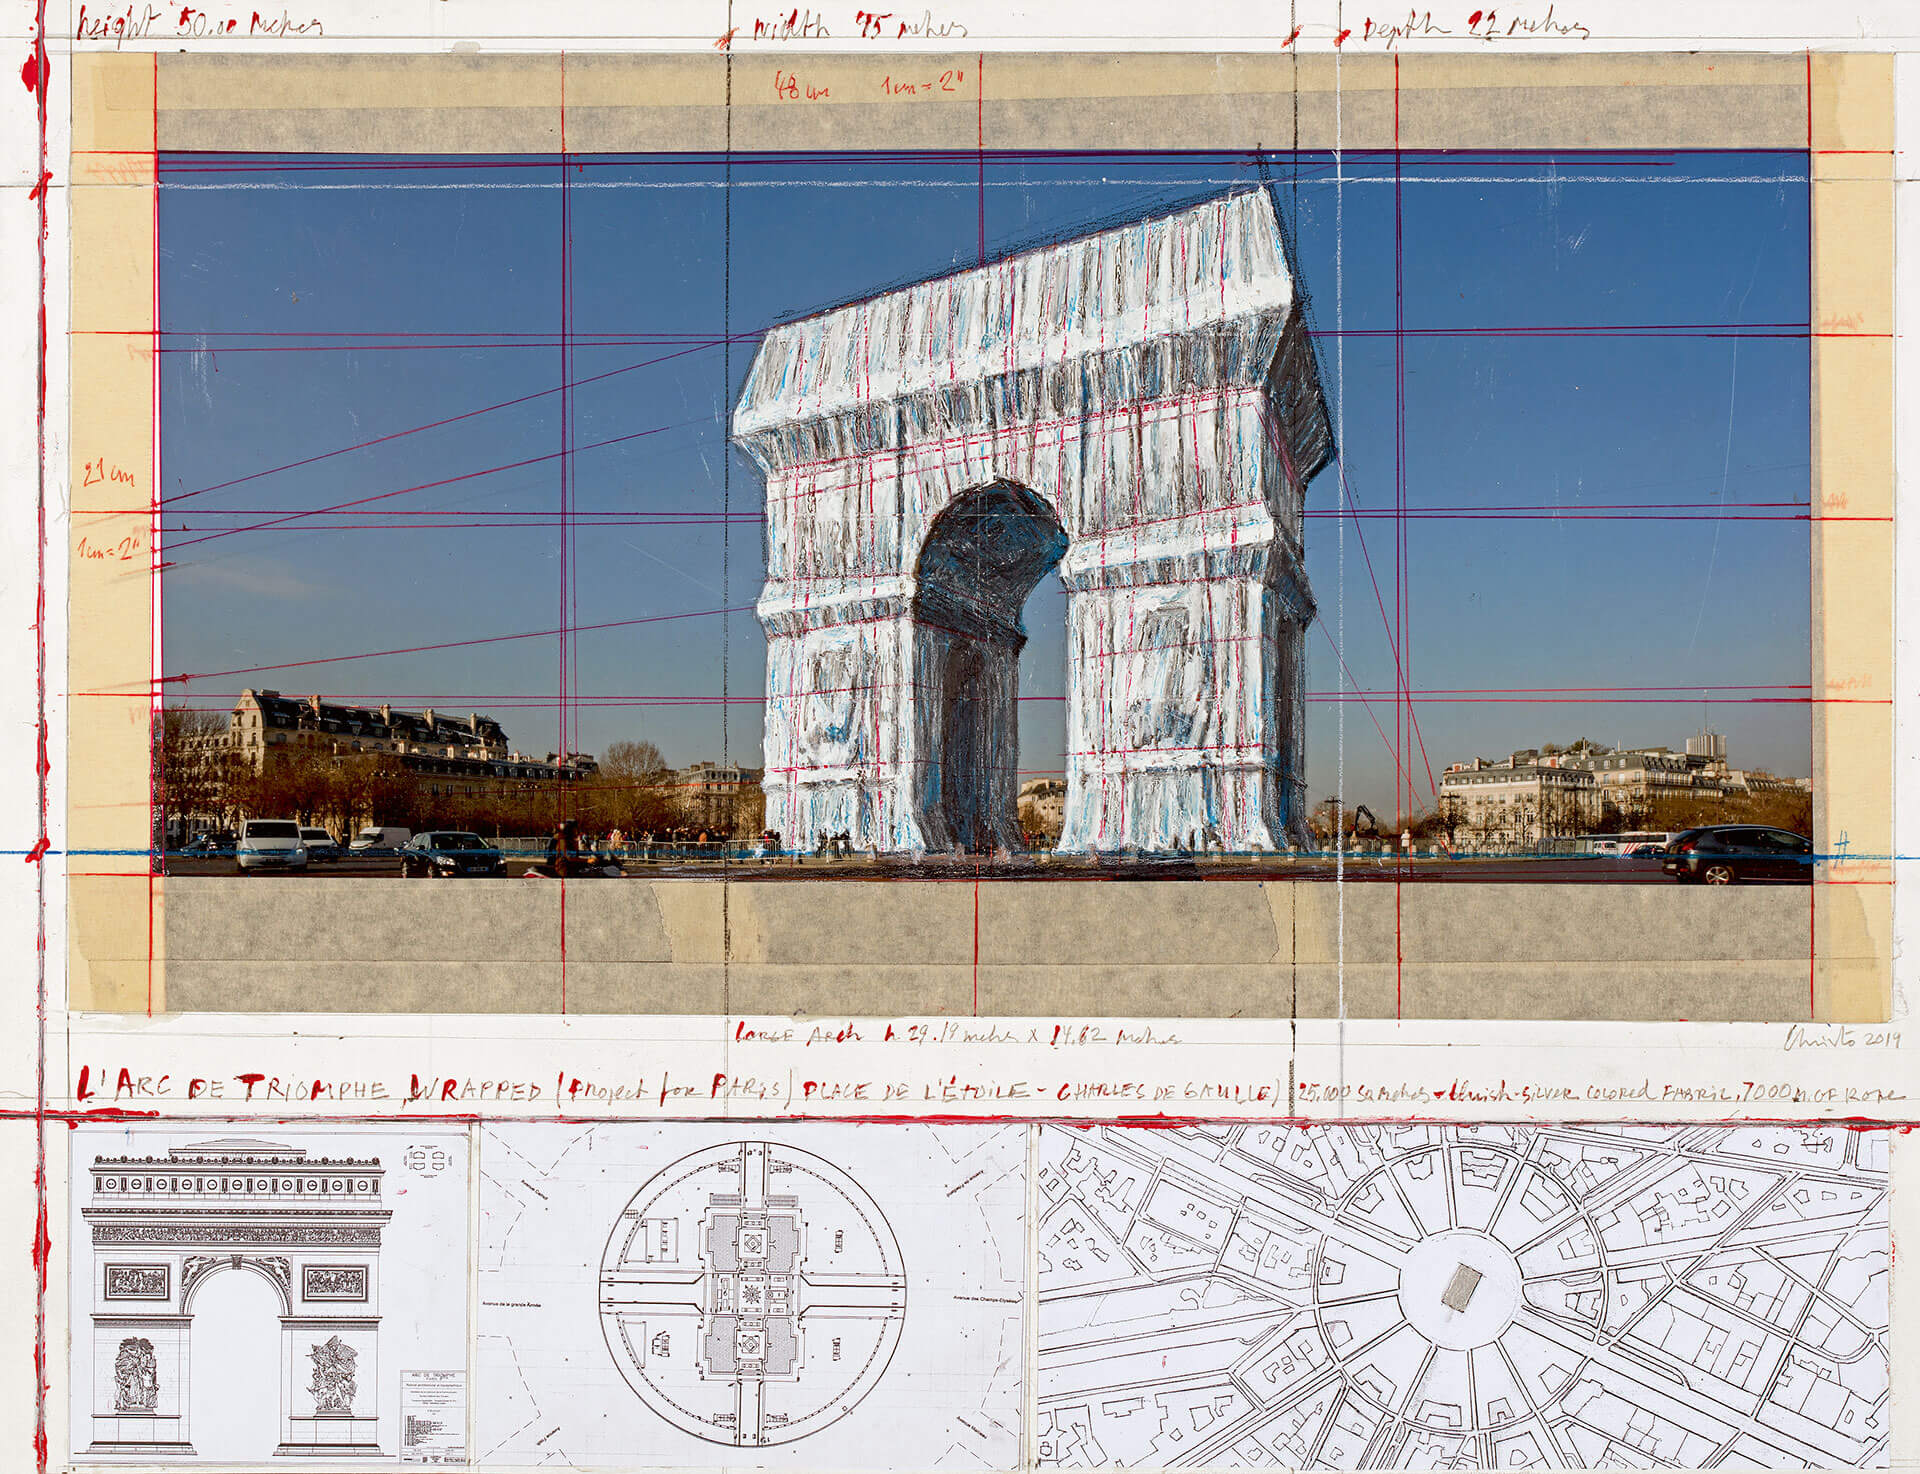 Die Collage „L’Arc de Triomphe, Wrapped (Project for Paris) Place de l’Étoile – Charles de Gaulle“ aus der Sammlung Würth, Inv. 18.389 bietet einen Ausblick auf das ultimative Projekt Christos, der im Mai 2020 verstarb. Sein Team wird die Verhüllung des Triumphbogens 2021 realisieren.